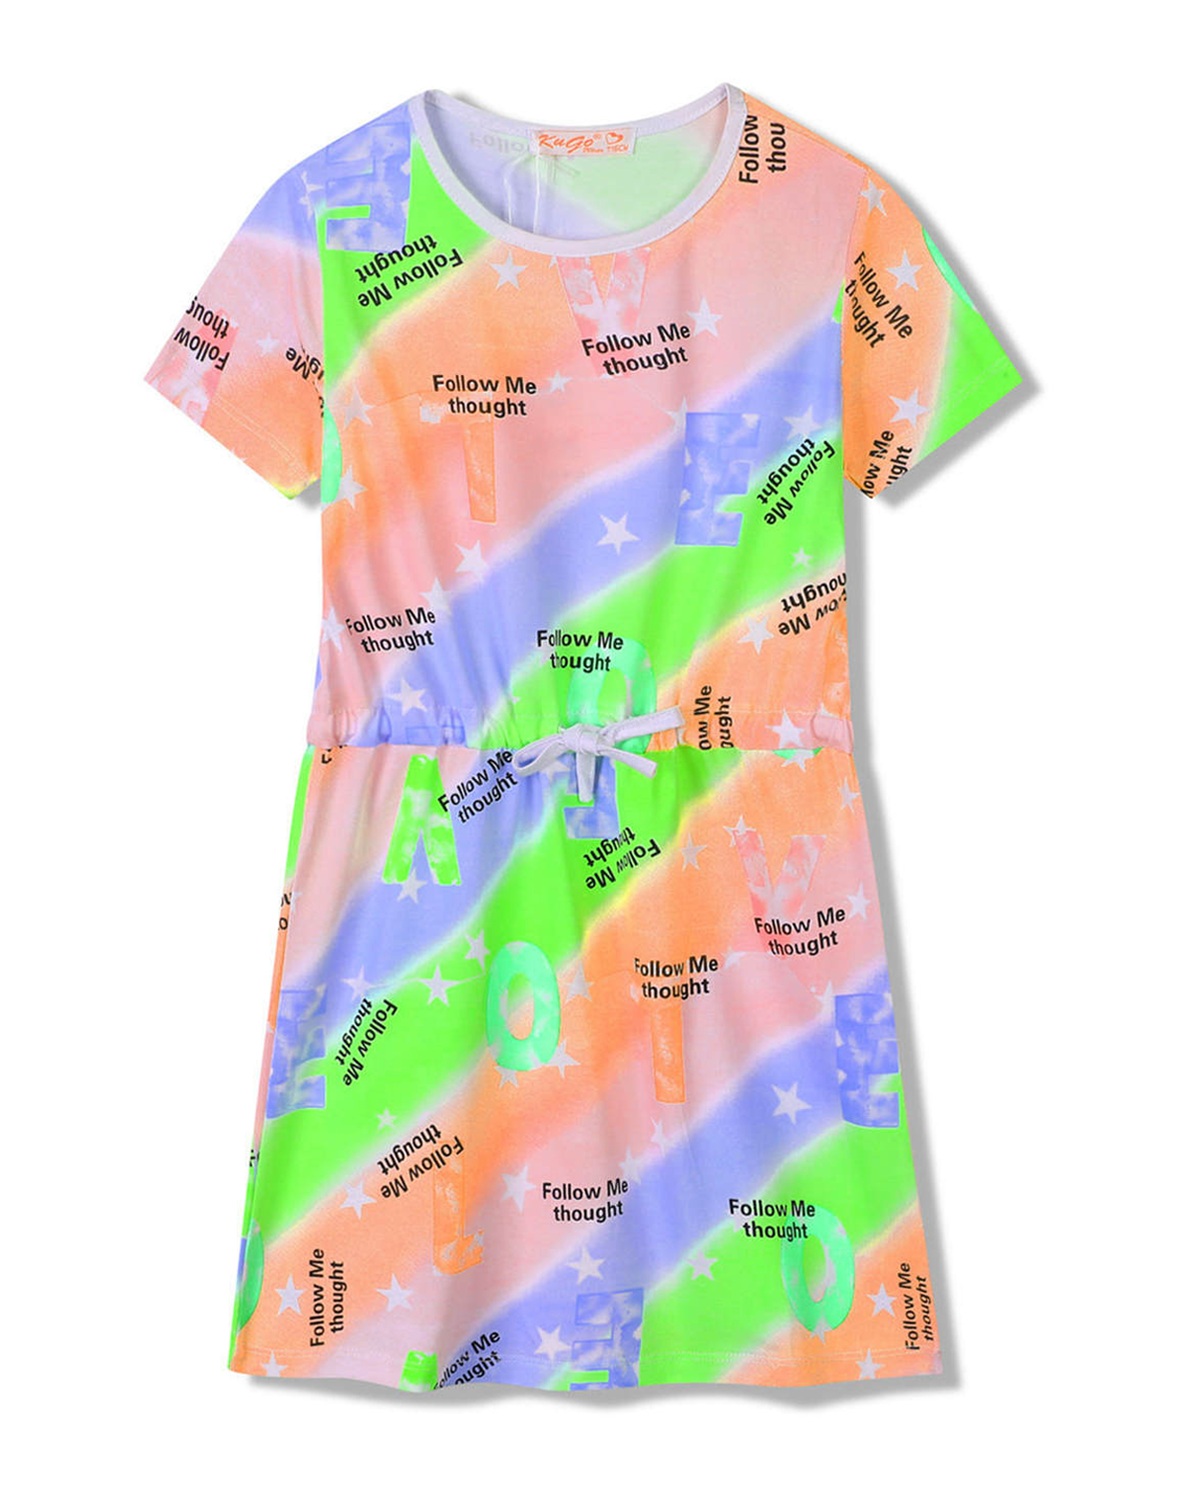 Dívčí šaty - KUGO SH3518, mix barev / bílý lem Barva: Mix barev, Velikost: 128